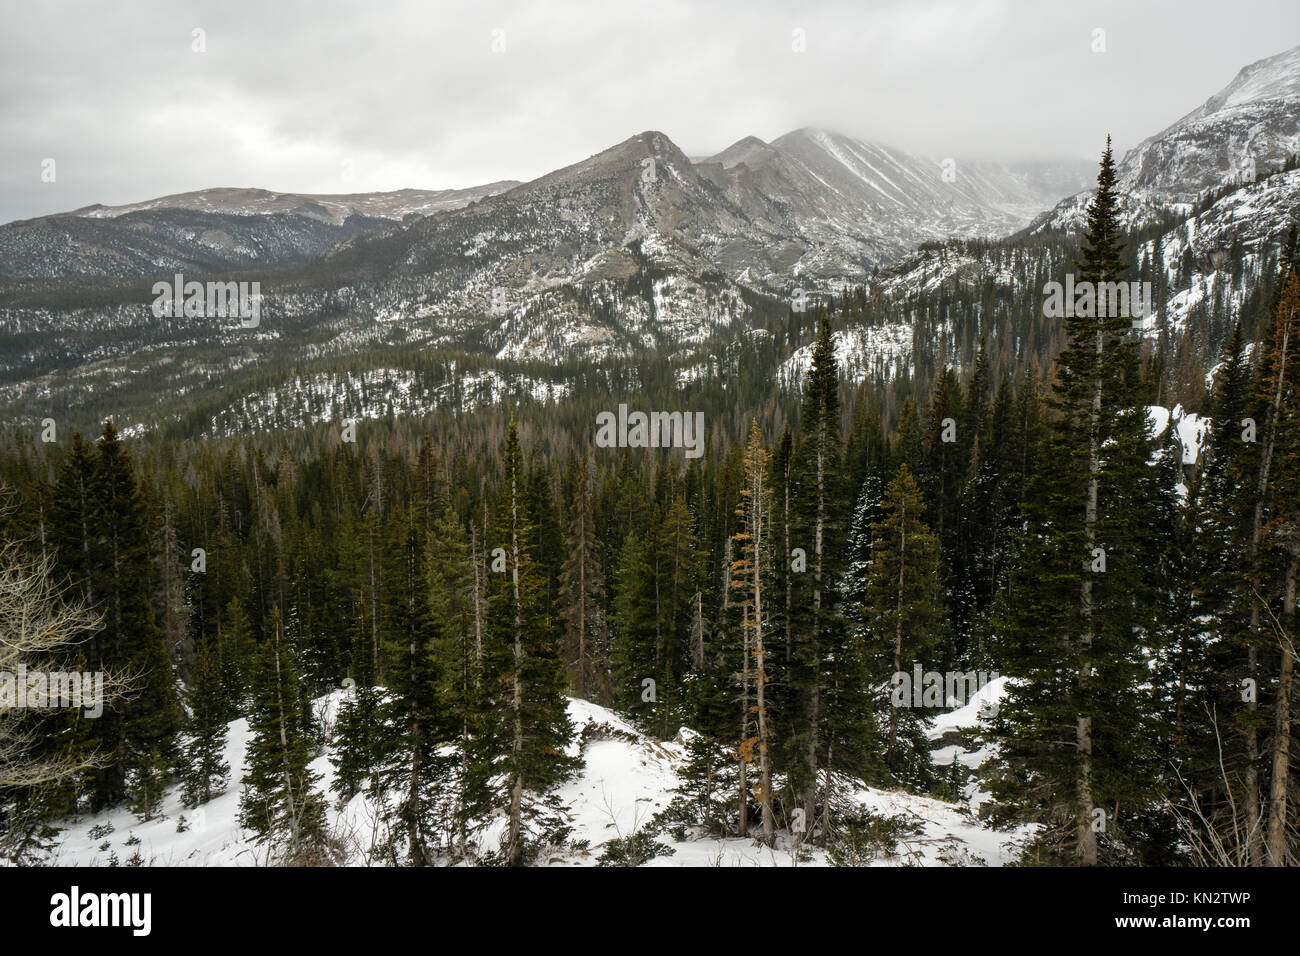 From near Bear Lake, Rocky Mountain National Park.  Estes Park, Colorado. Stock Photo